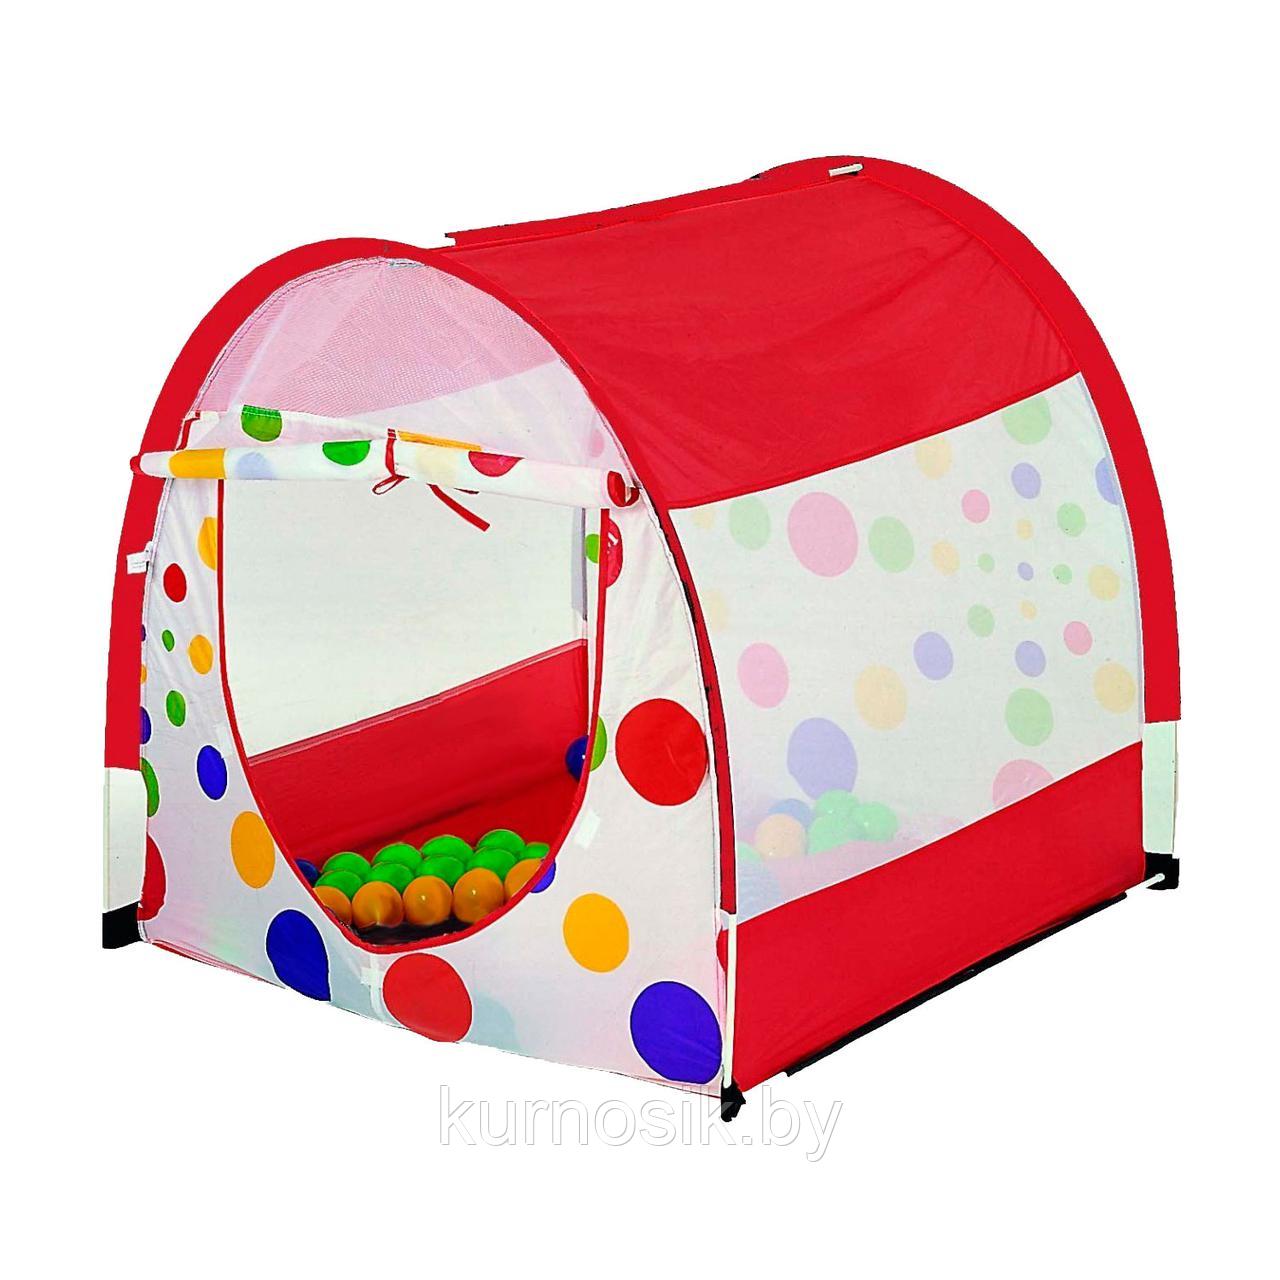 Игровая палатка с мячиками (100 шт) Calida "Арка" арт. 617